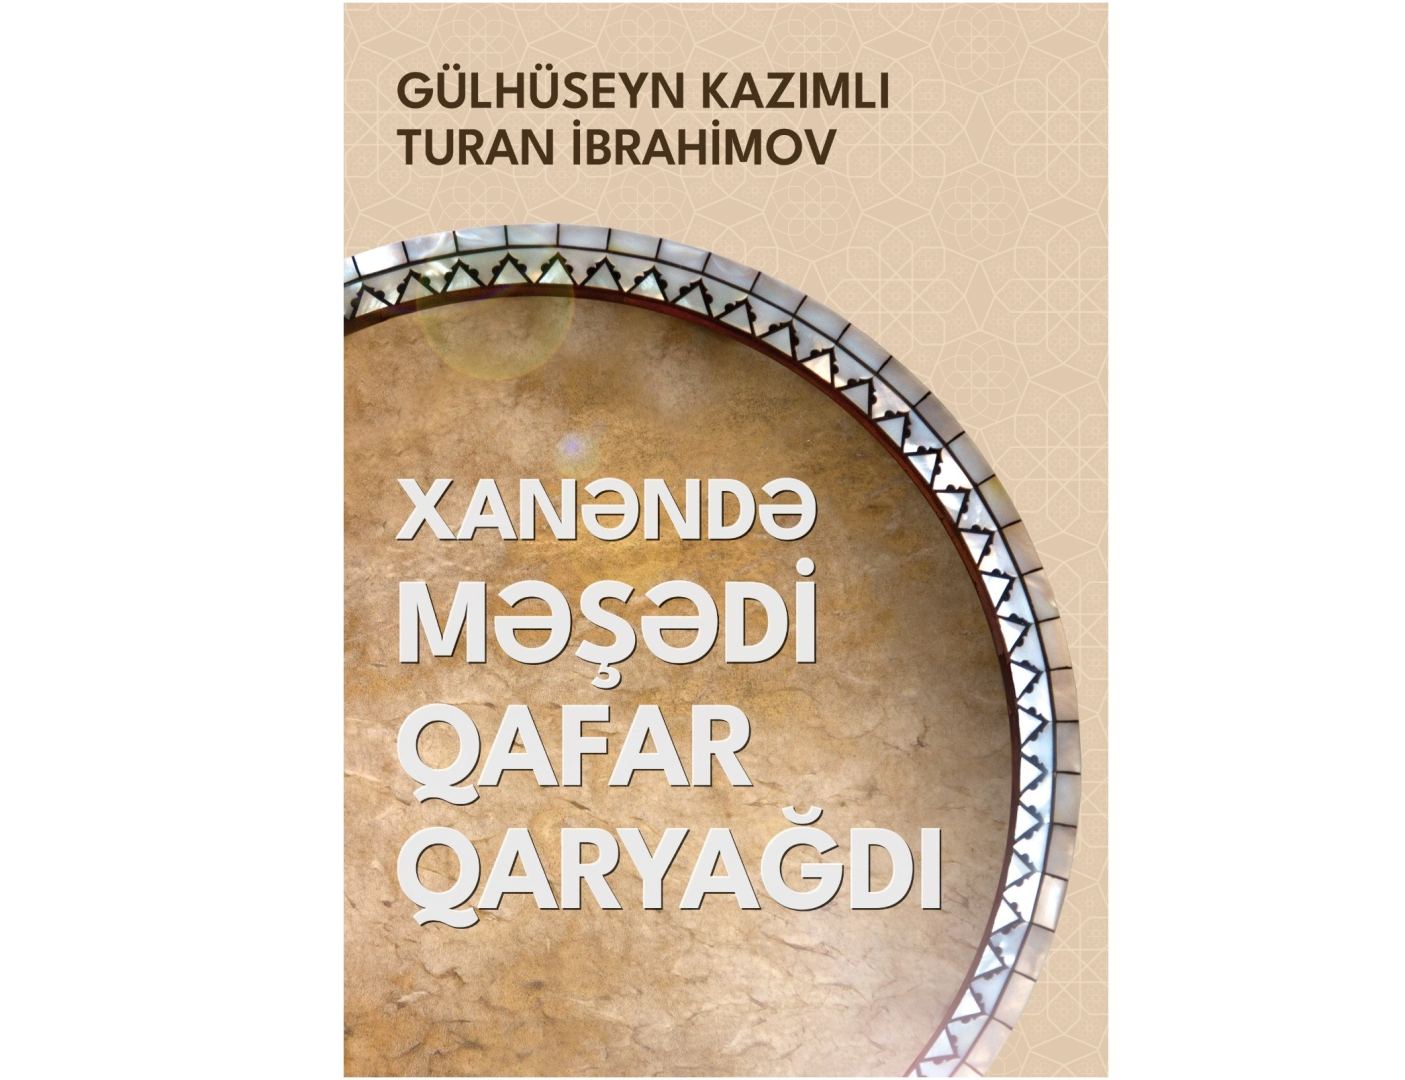 Издана книга о ханенде Мешади Гафаре Гарьягды